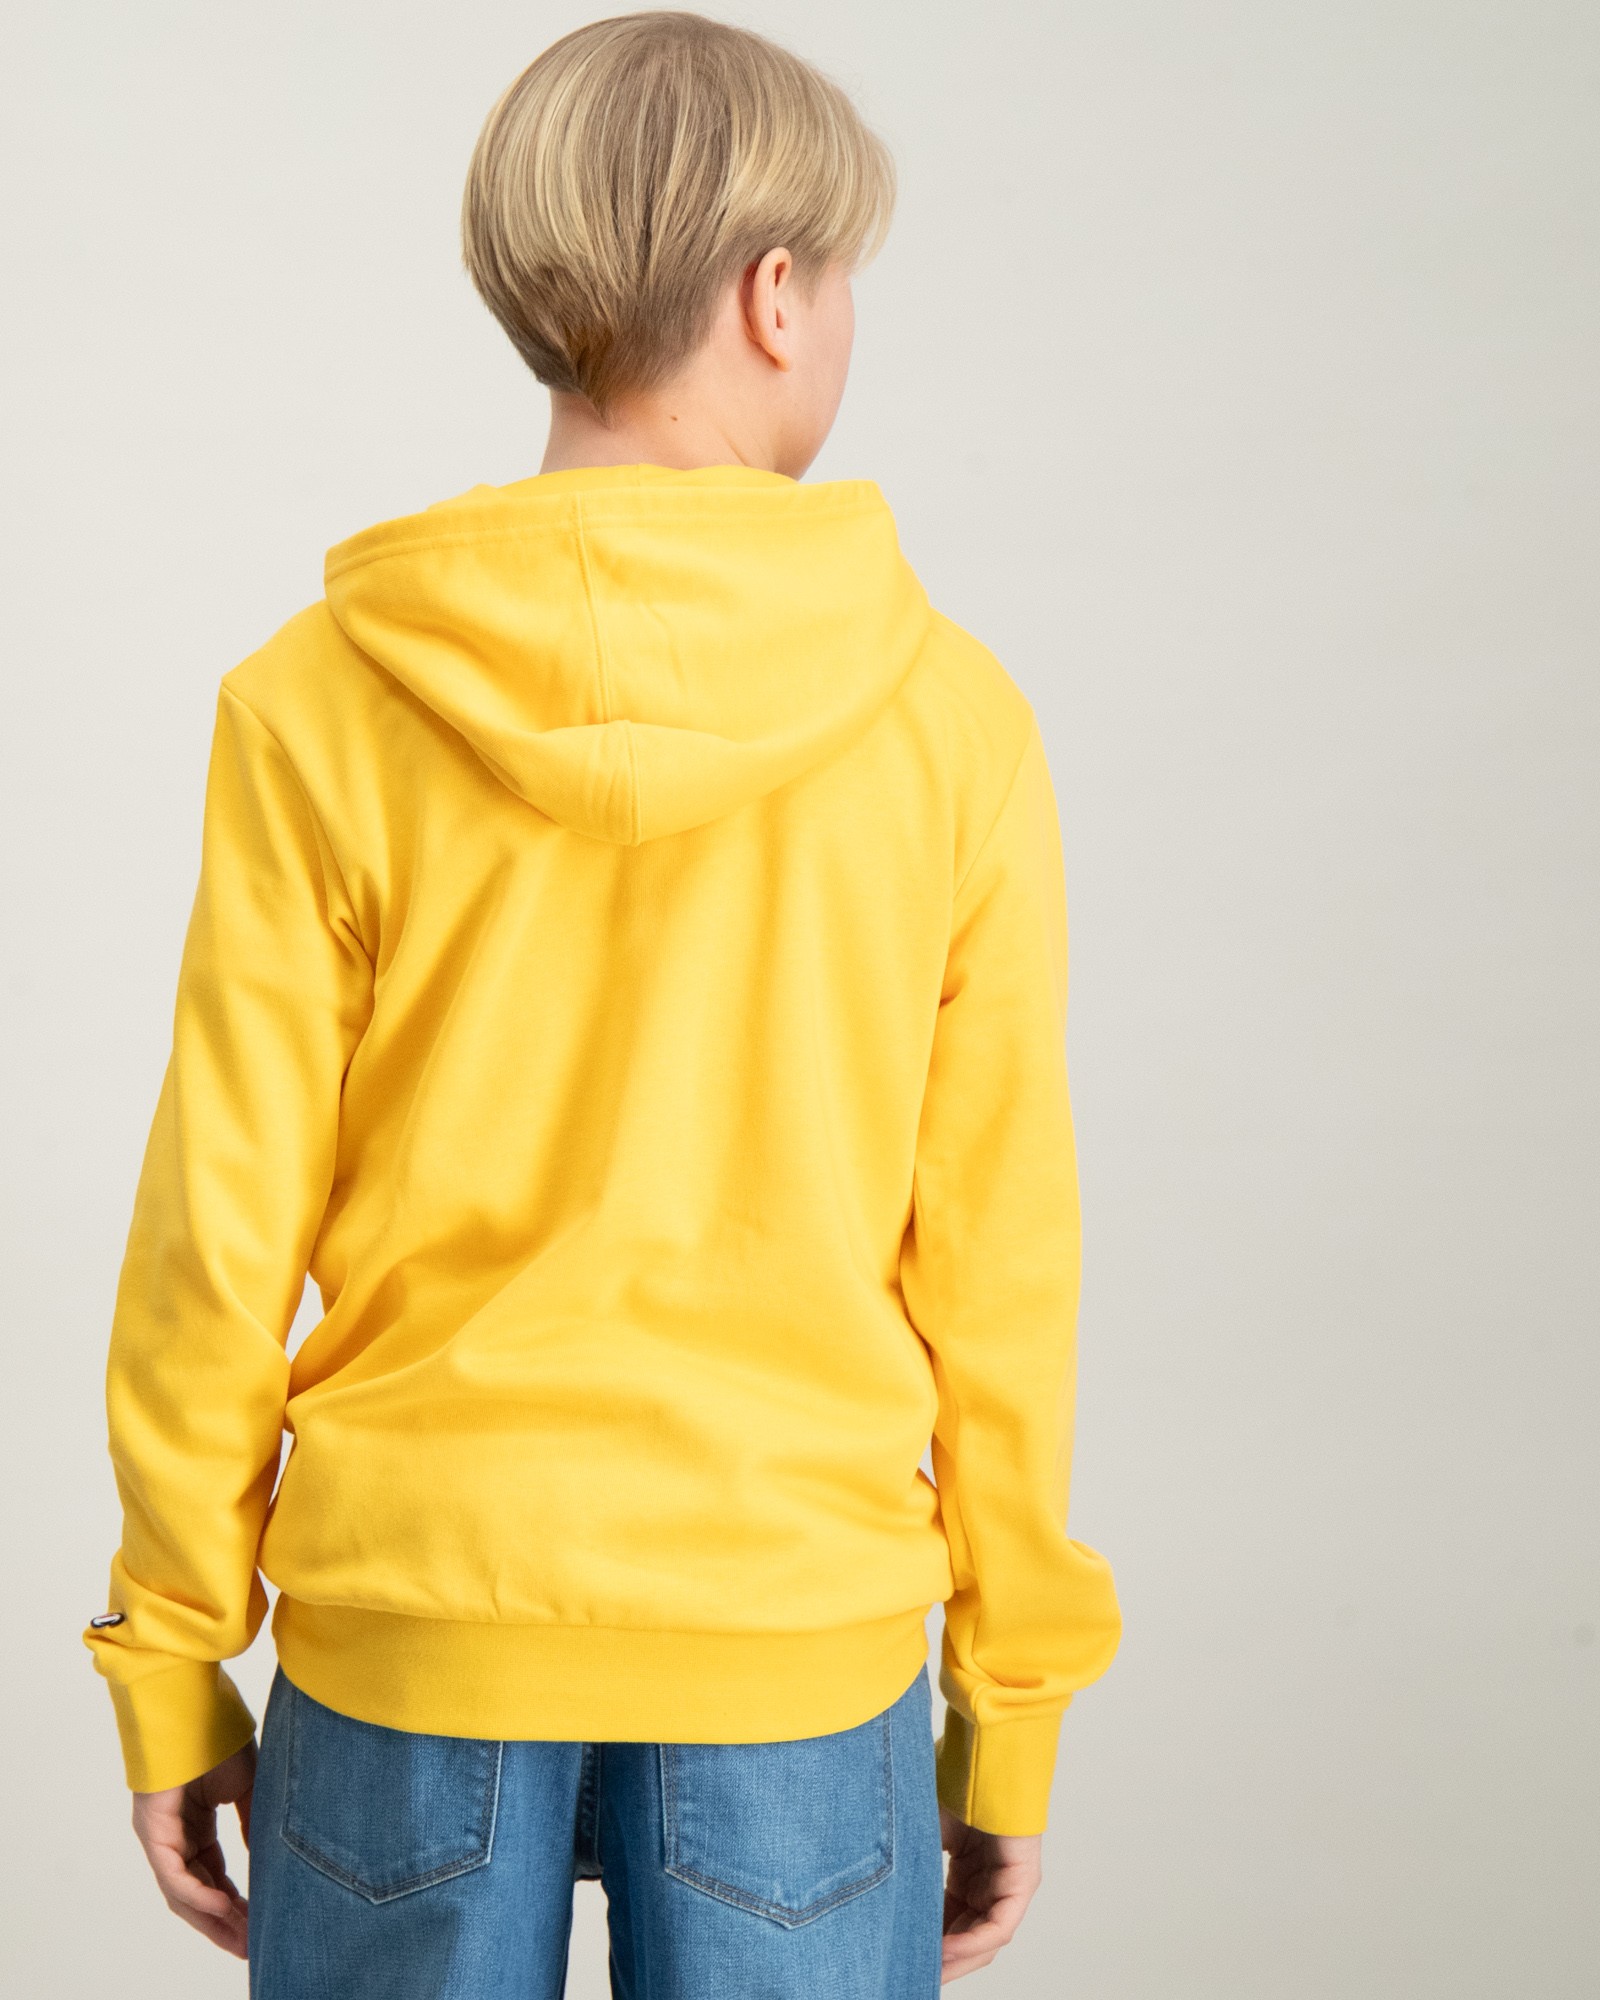 Store | Hooded Brand Kids Jungen Sweatshirt Gelb für